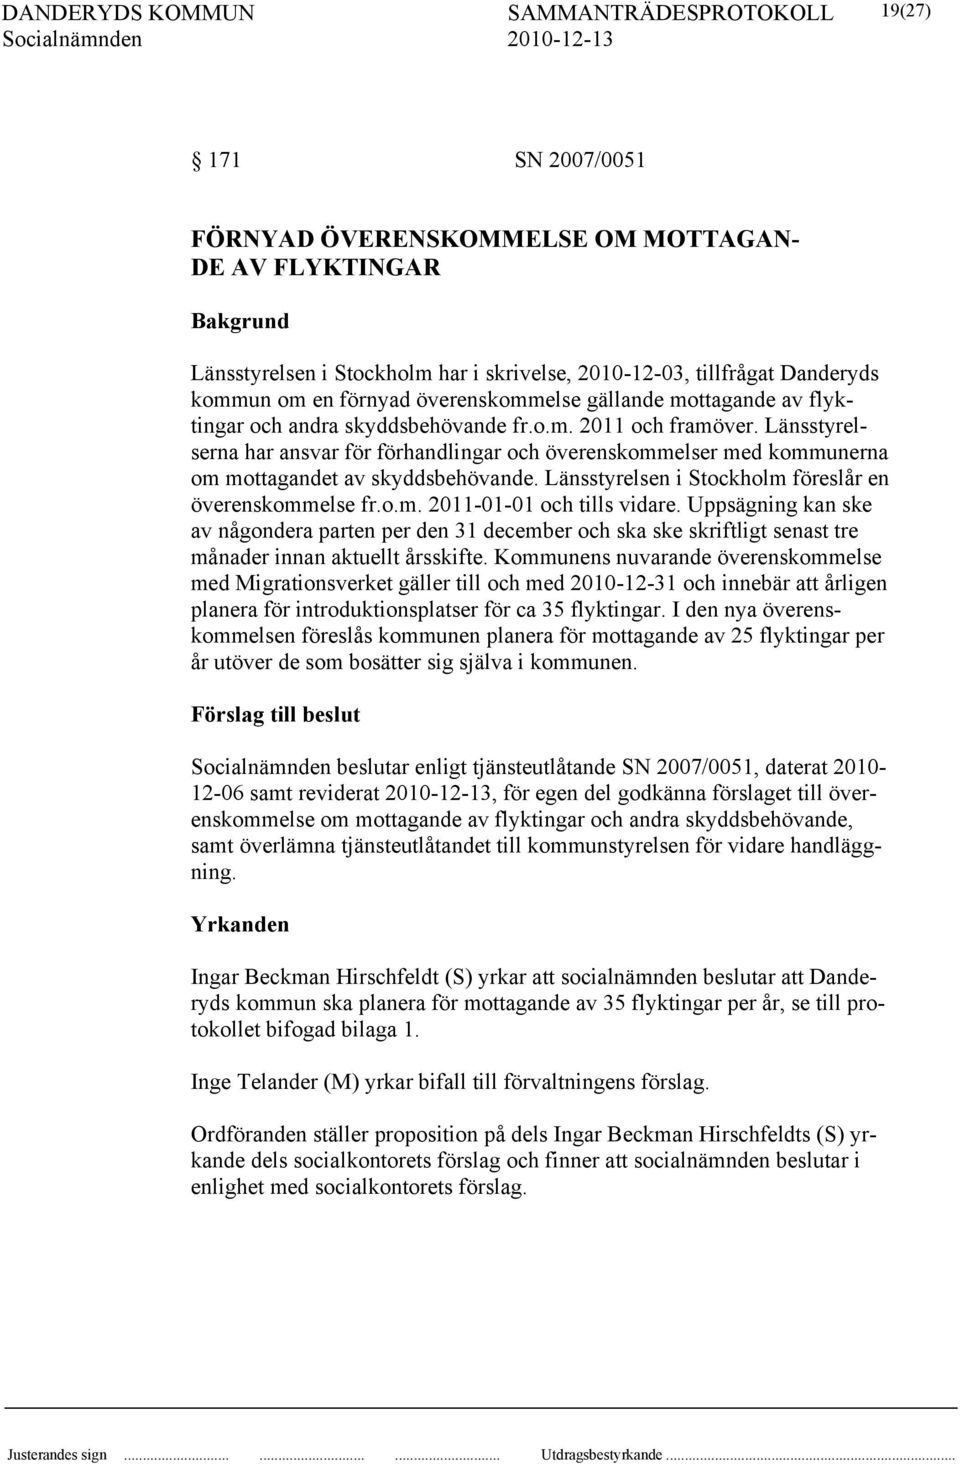 Länsstyrelserna har ansvar för förhandlingar och överenskommelser med kommunerna om mottagandet av skyddsbehövande. Länsstyrelsen i Stockholm föreslår en överenskommelse fr.o.m. 2011-01-01 och tills vidare.